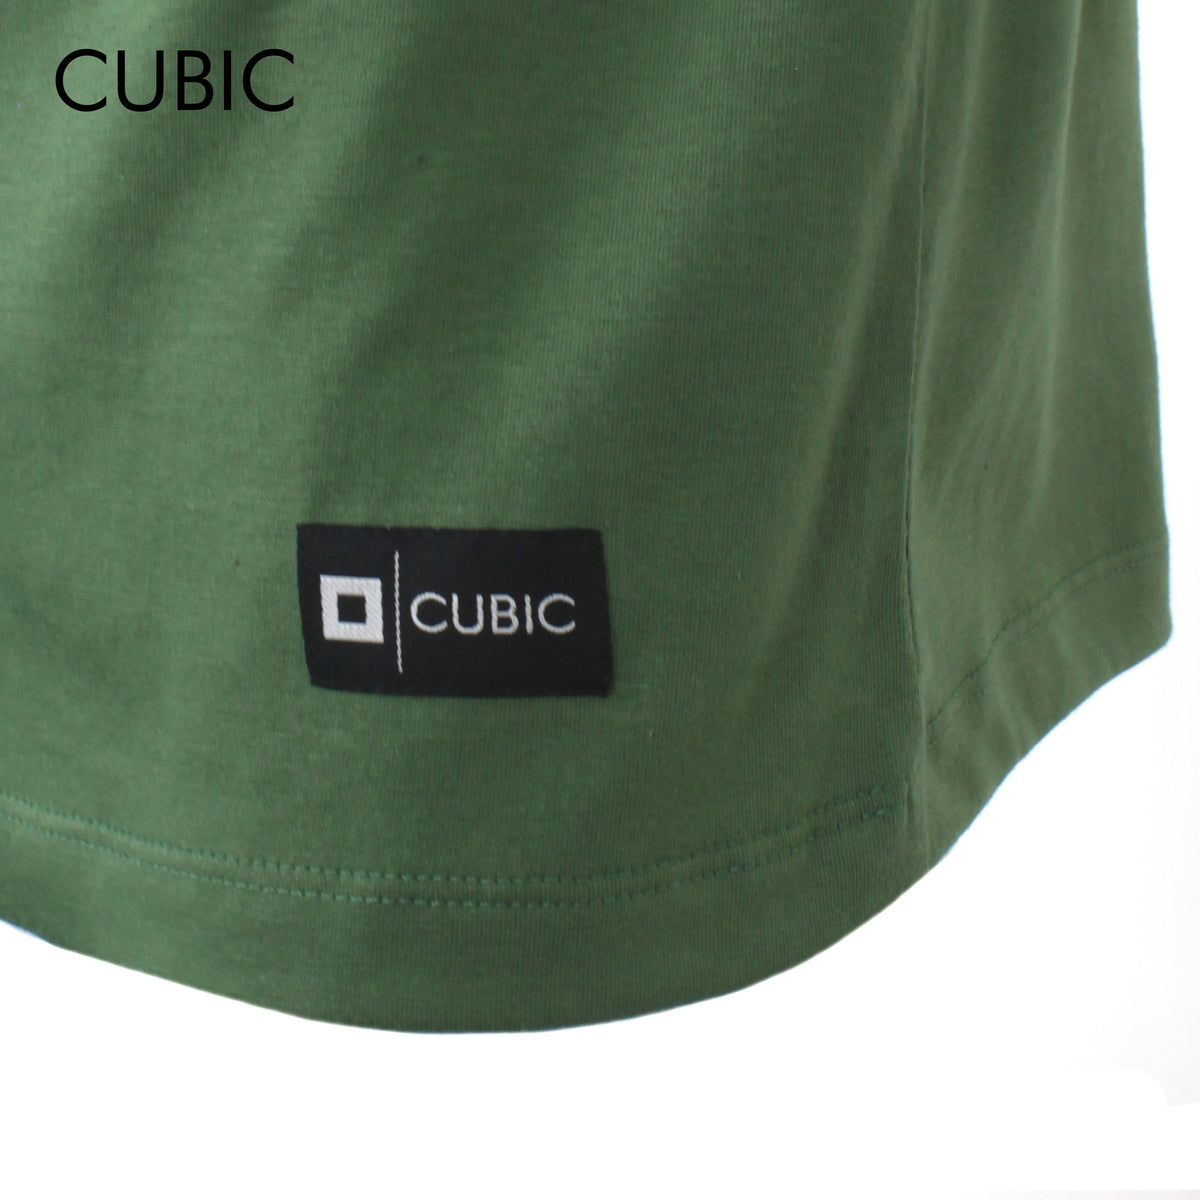 Cubic Men Round Neck Tees T-shirt Plain Shirt Top Top for Men - CMJ2311R